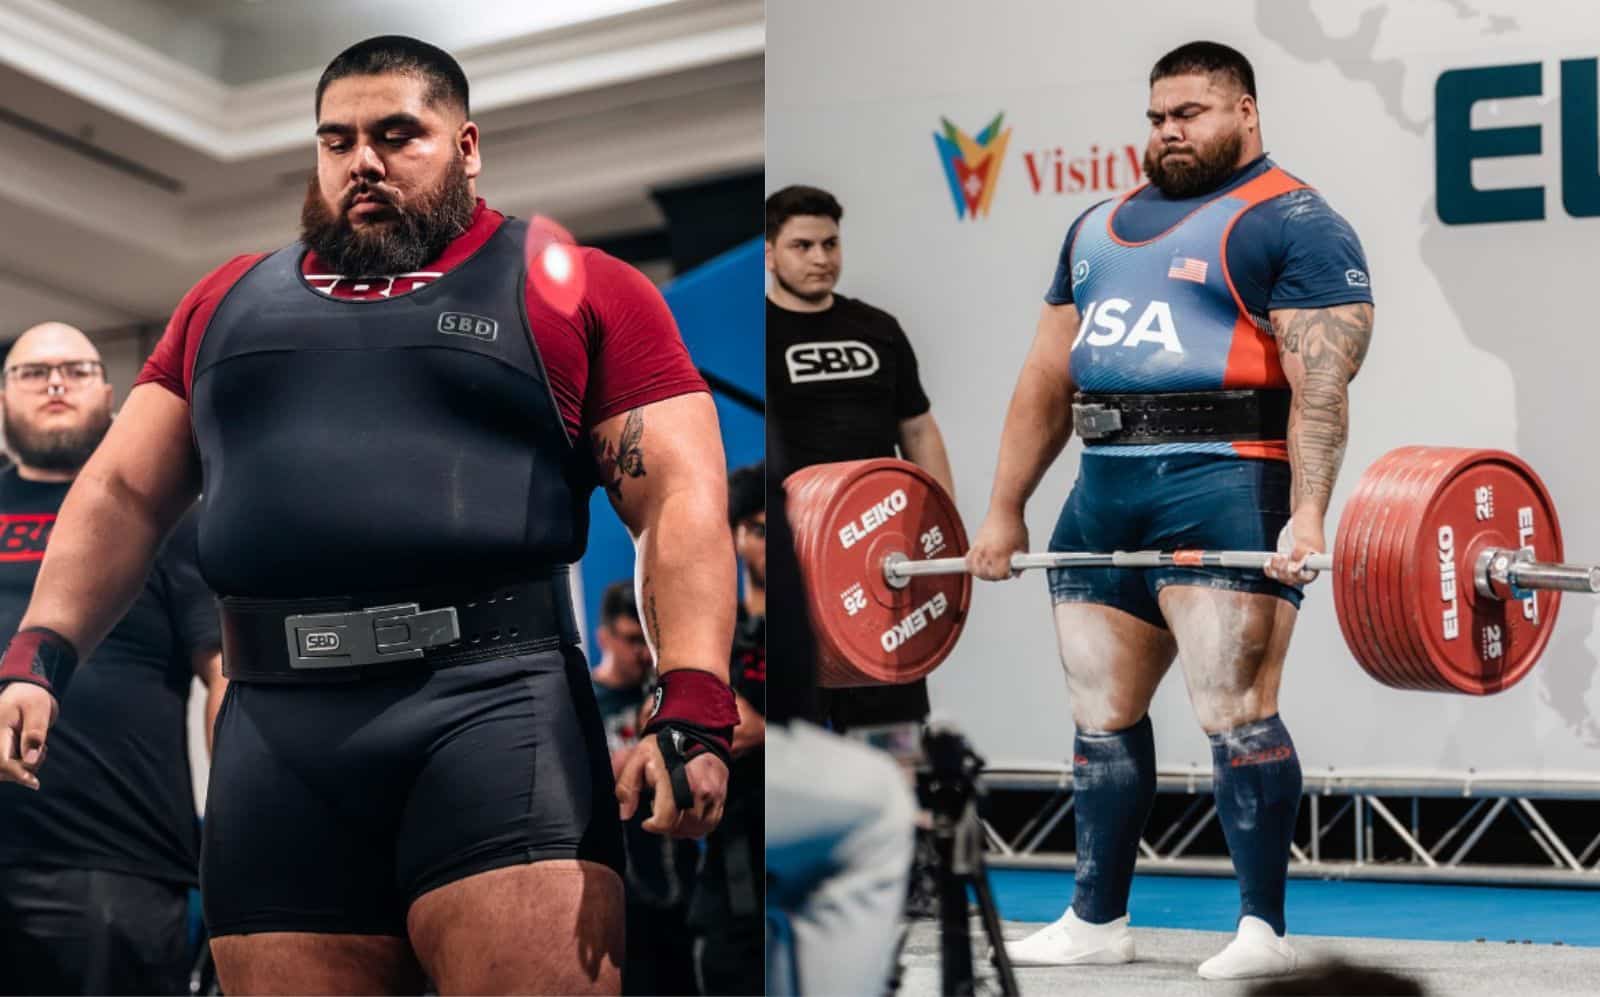 Profil de Jesus Olivares - Carrière, entraînement, taille, poids et plus - Fitness Volt